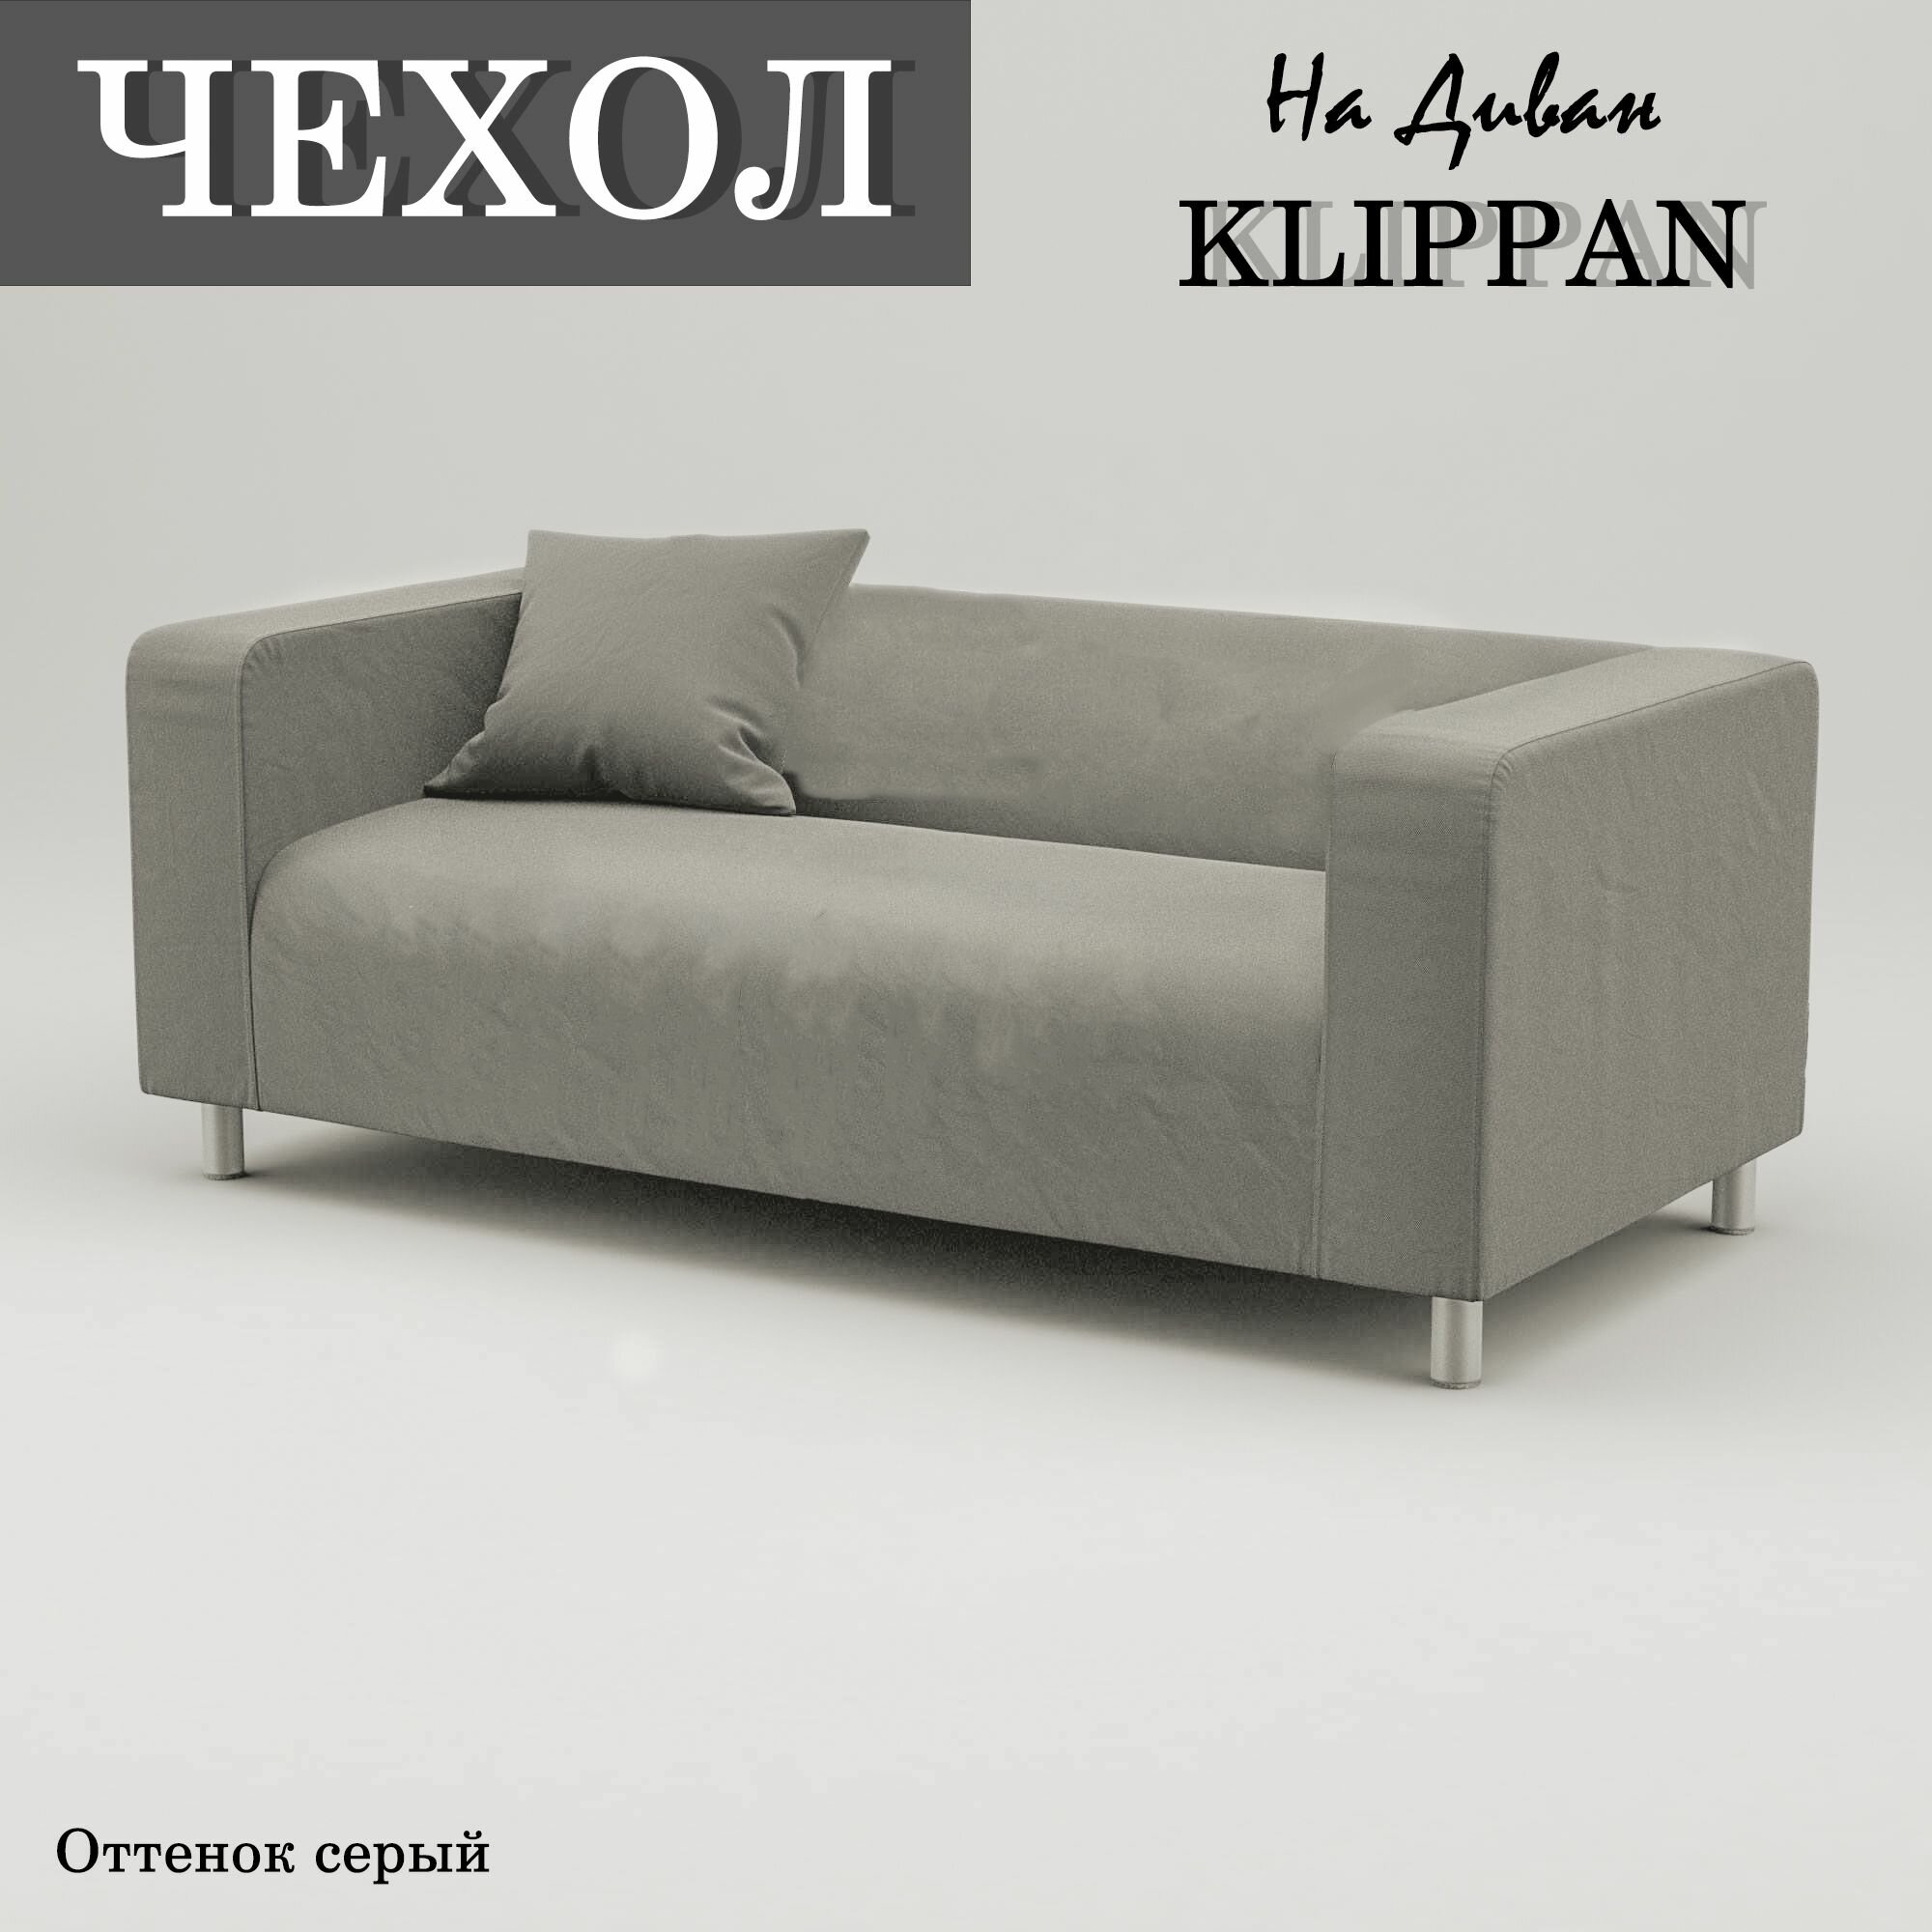 Чехол на диван клиппан двухместный; цвет серый; велюр антикоготь.